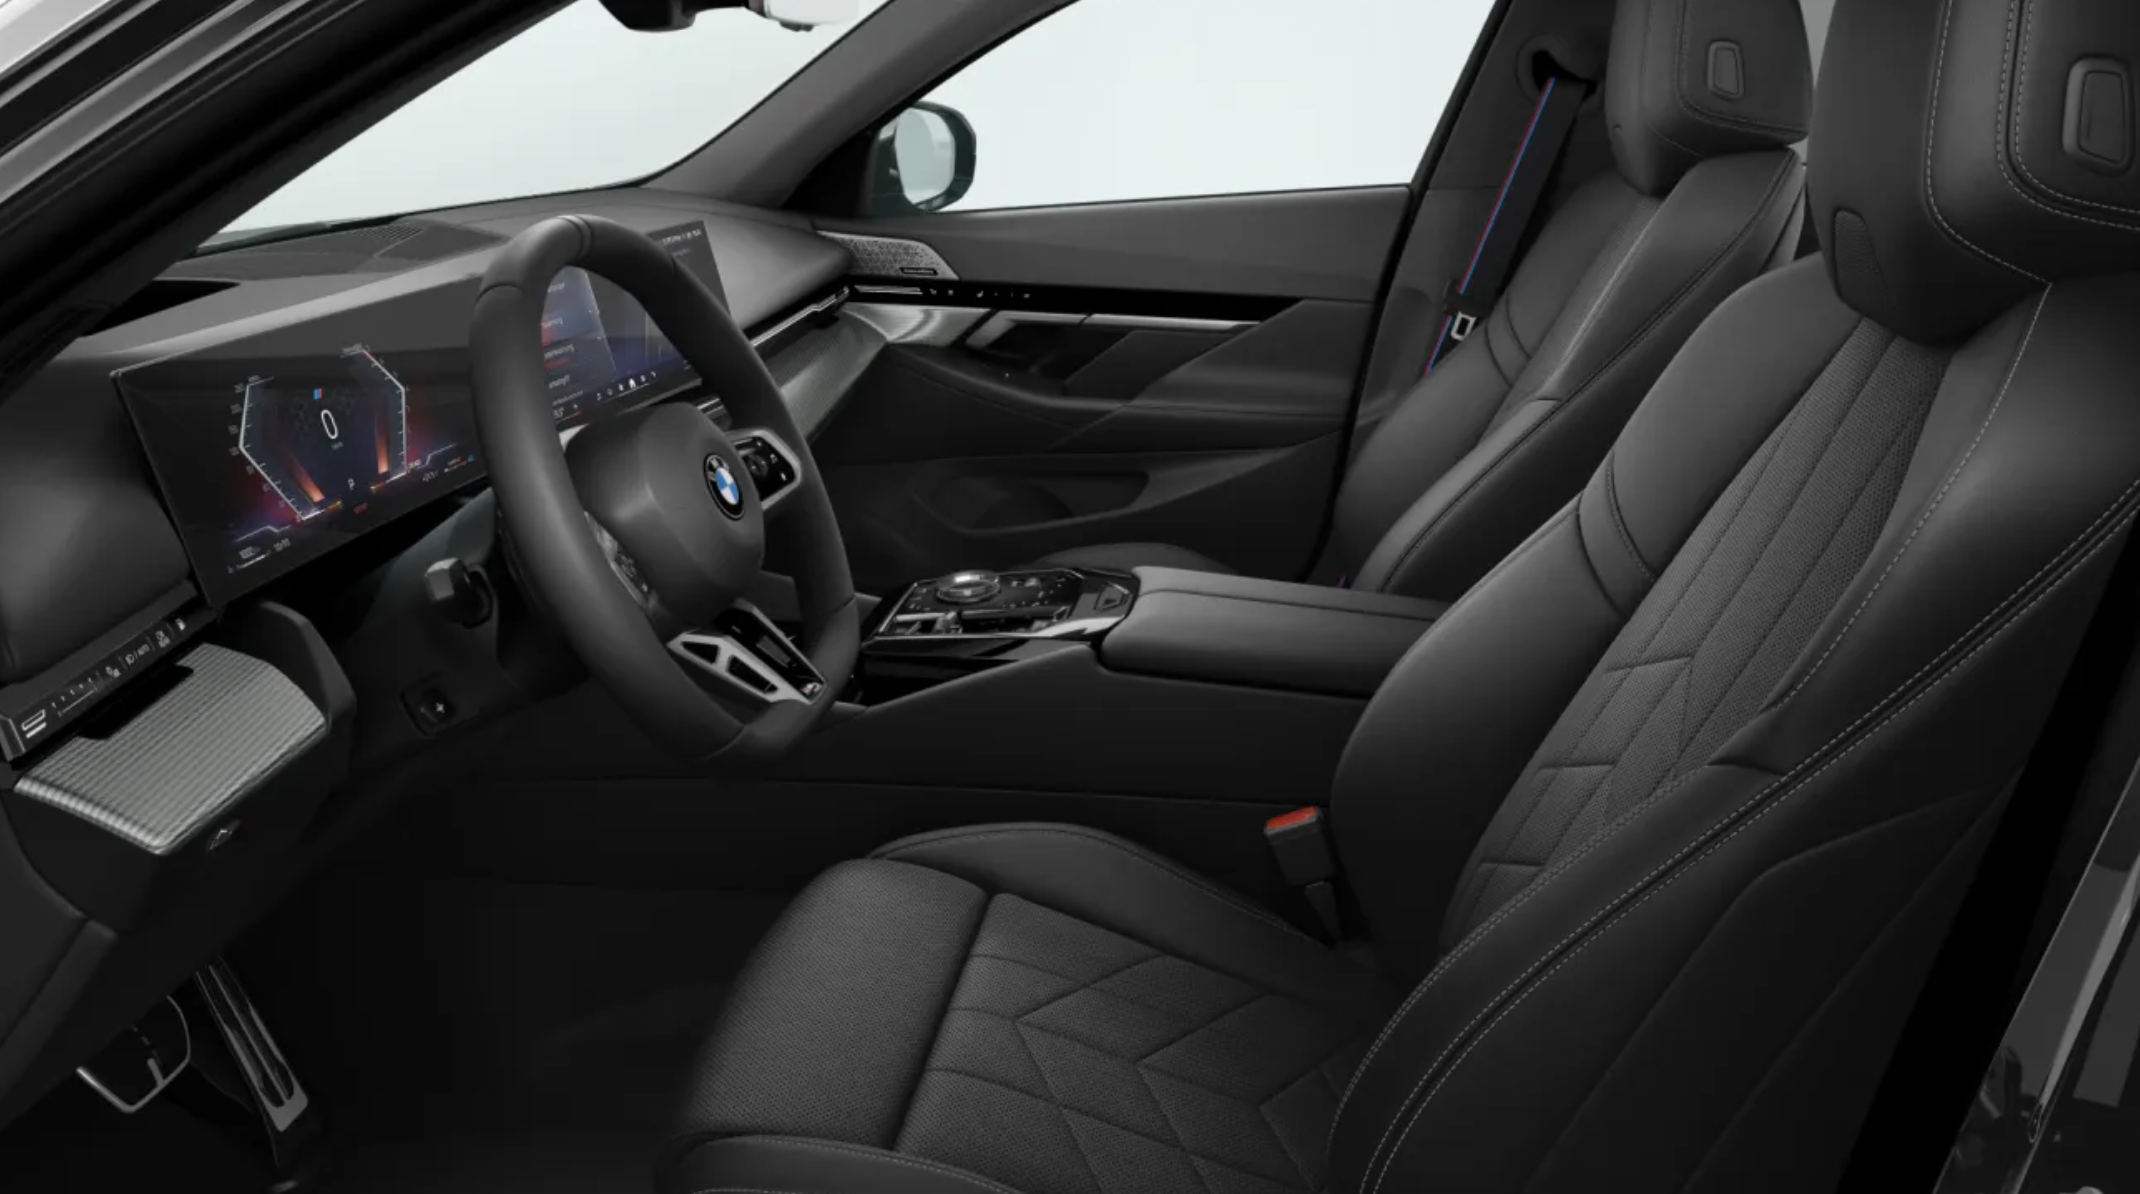 BMW 520d xDrive Mpaket Touring | nové auto k objednání do výroby | byznys naftové kombi | nový facelift  | první objednávky | nákup online | autoibuy.com